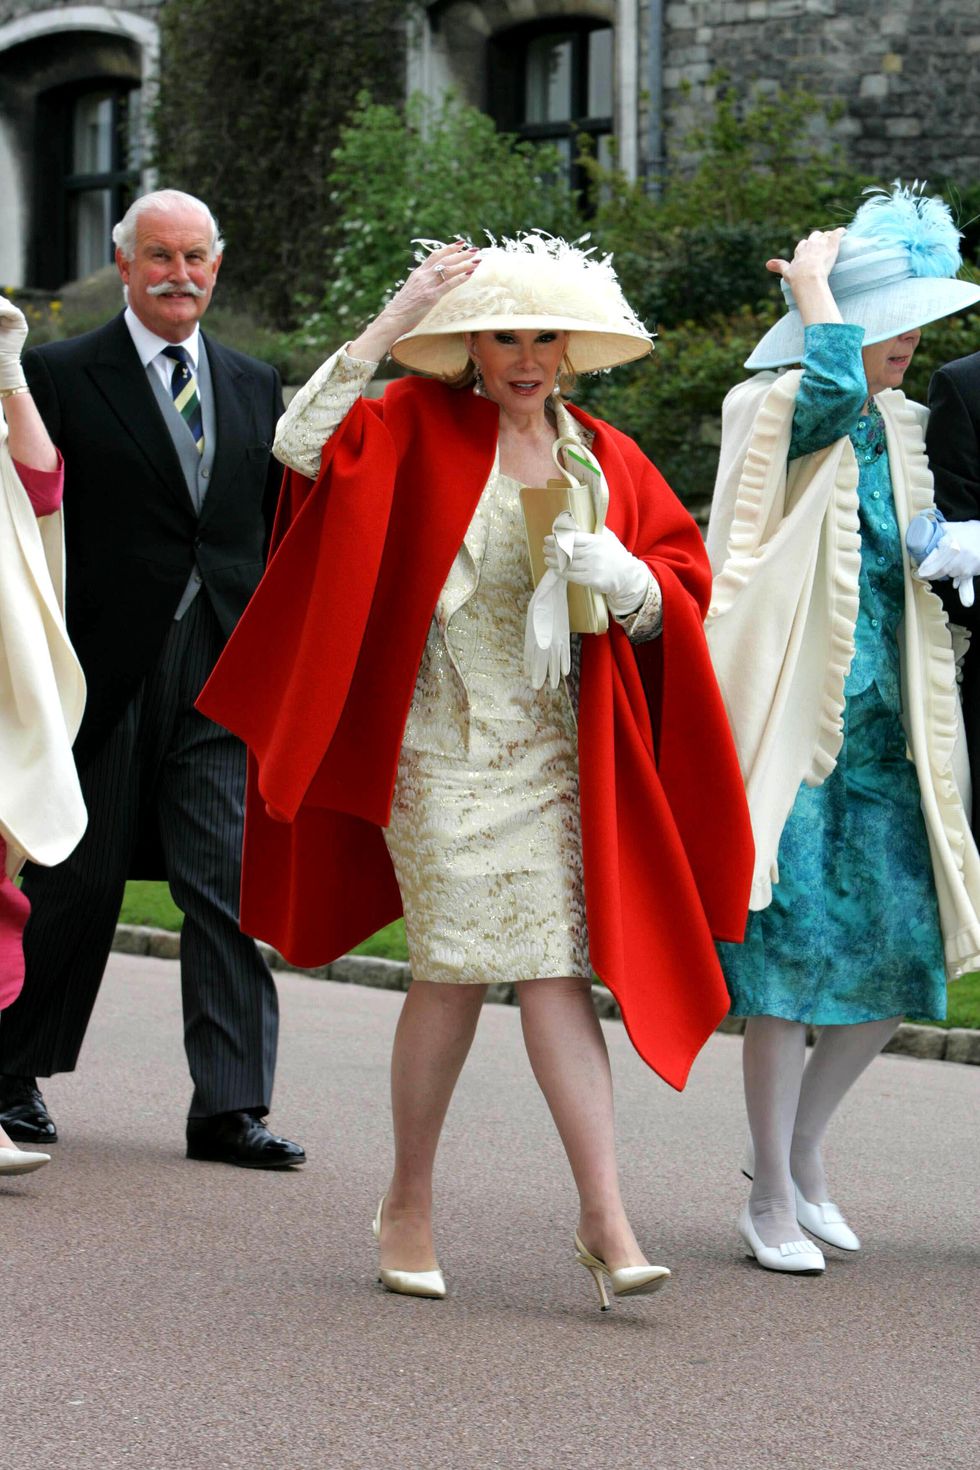 Joan Rivers at The Royal Wedding of HRH Prince Charles and Camilla Parker Bowles